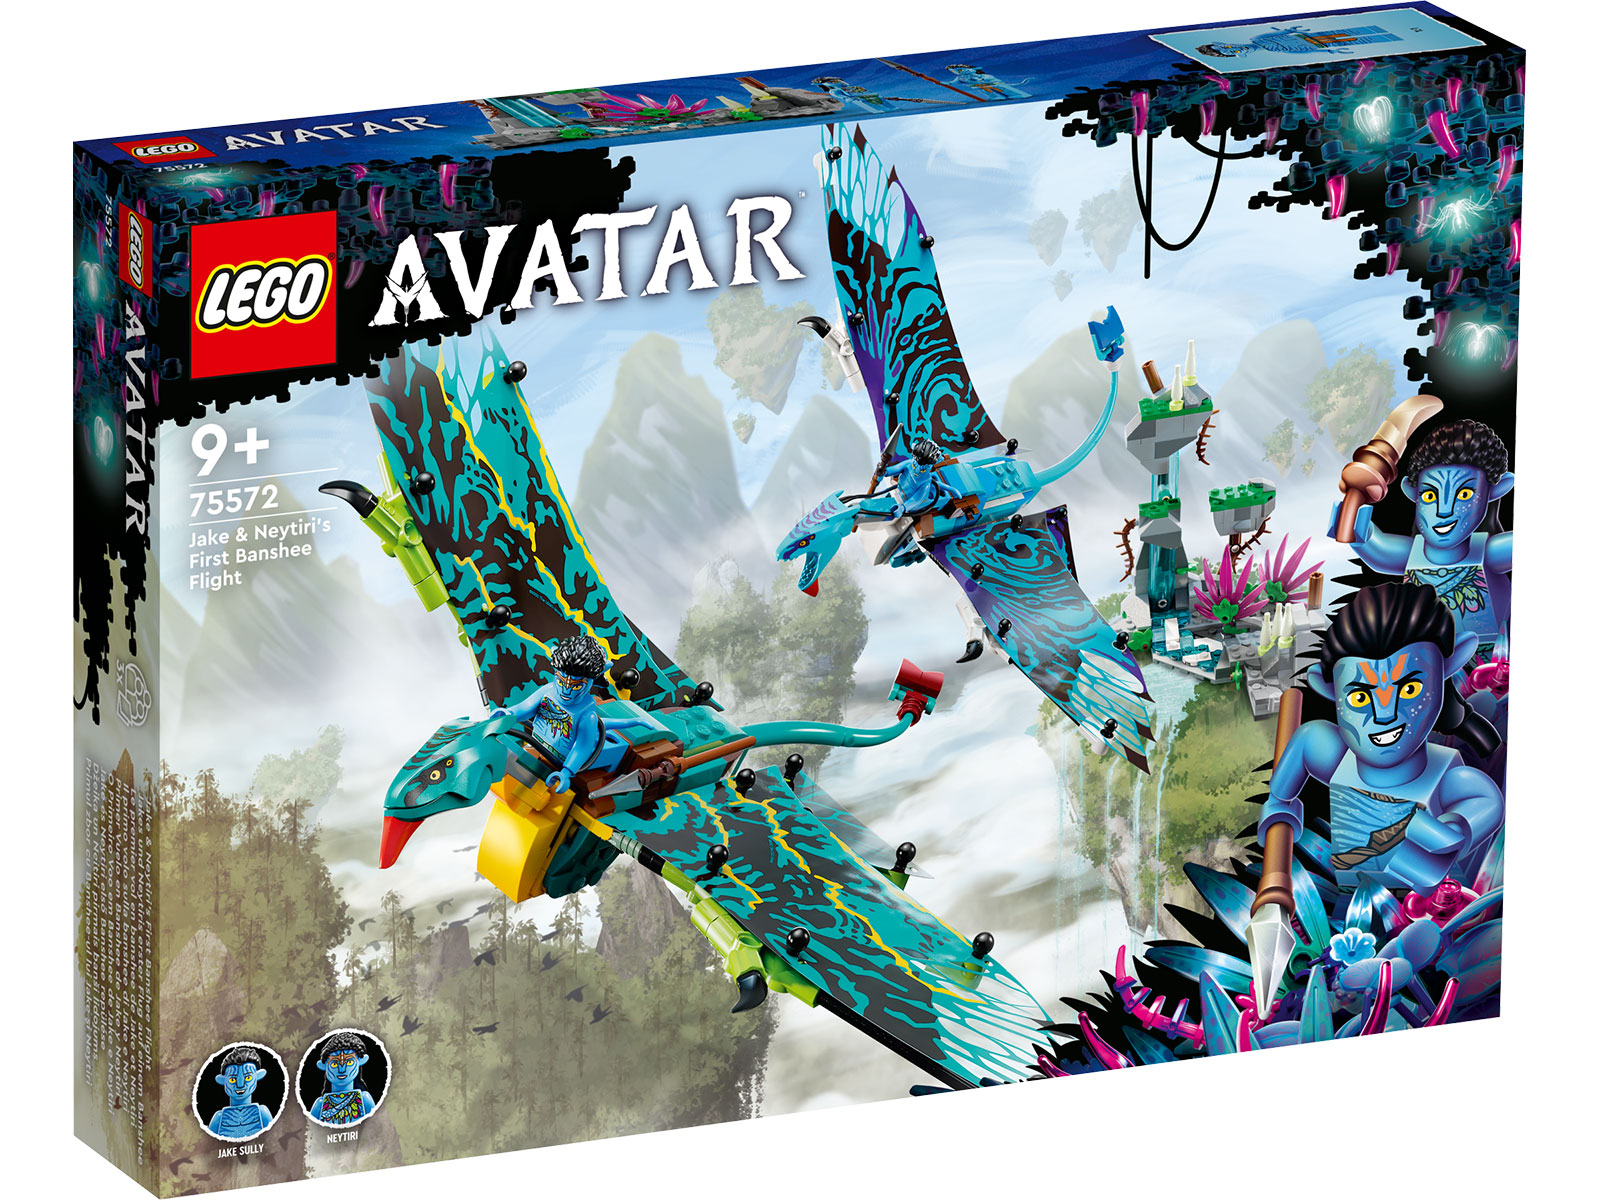 LEGO® Avatar 75572 - Jakes und Neytiris erster Flug auf einem Banshee - Box Front